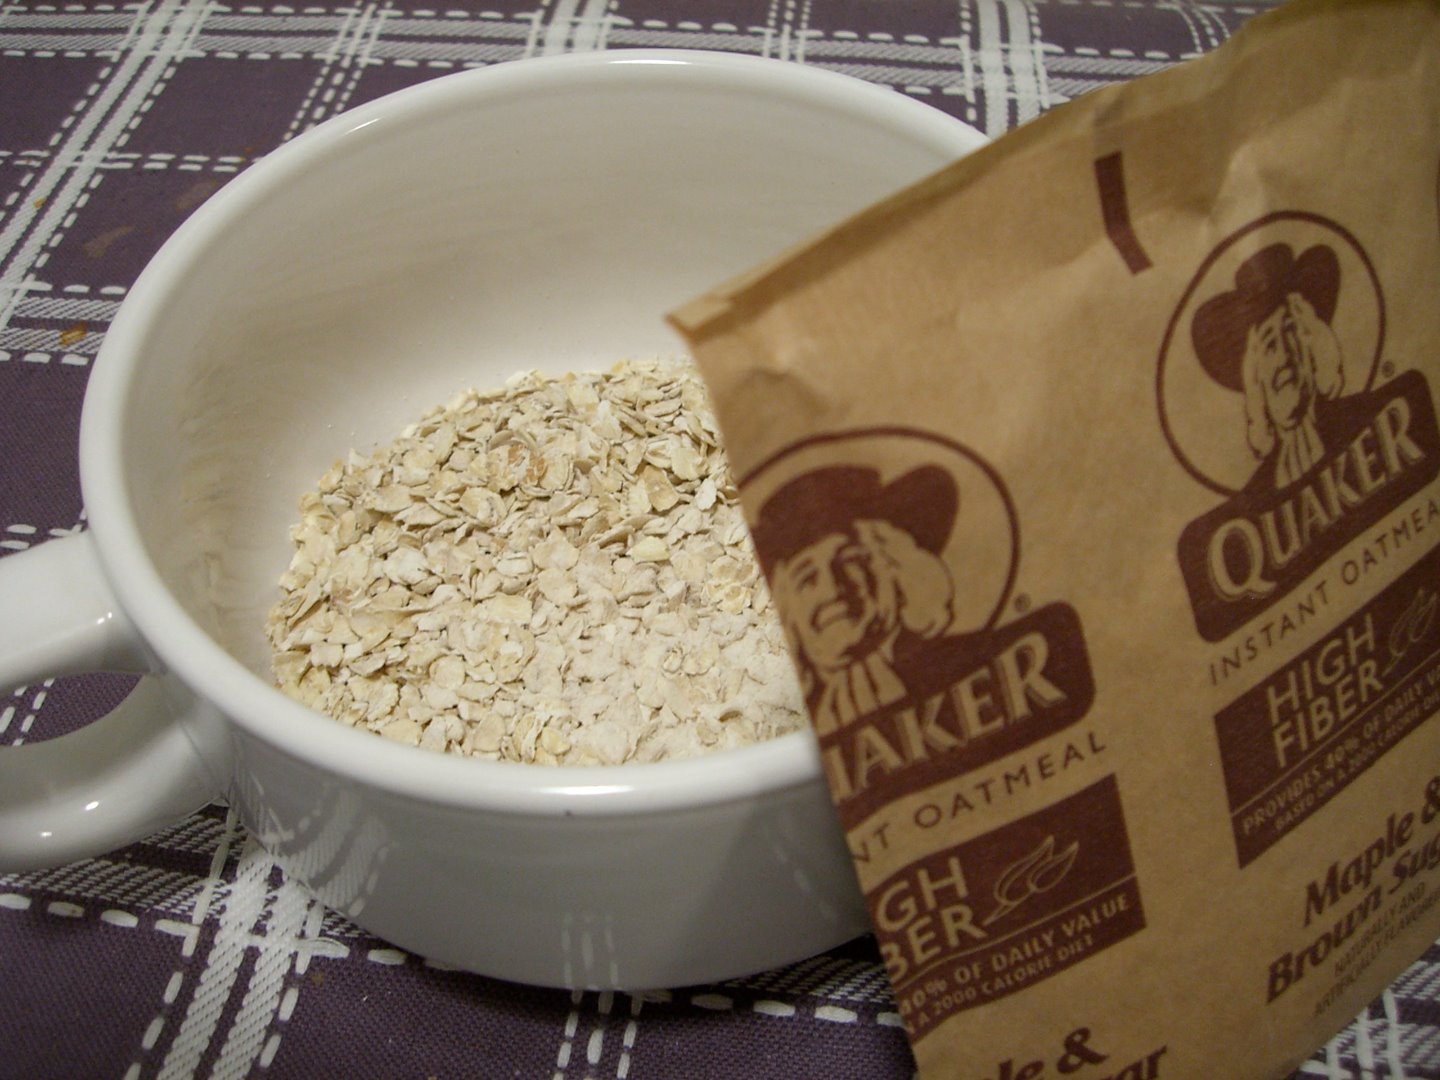 oatmeal.jpg